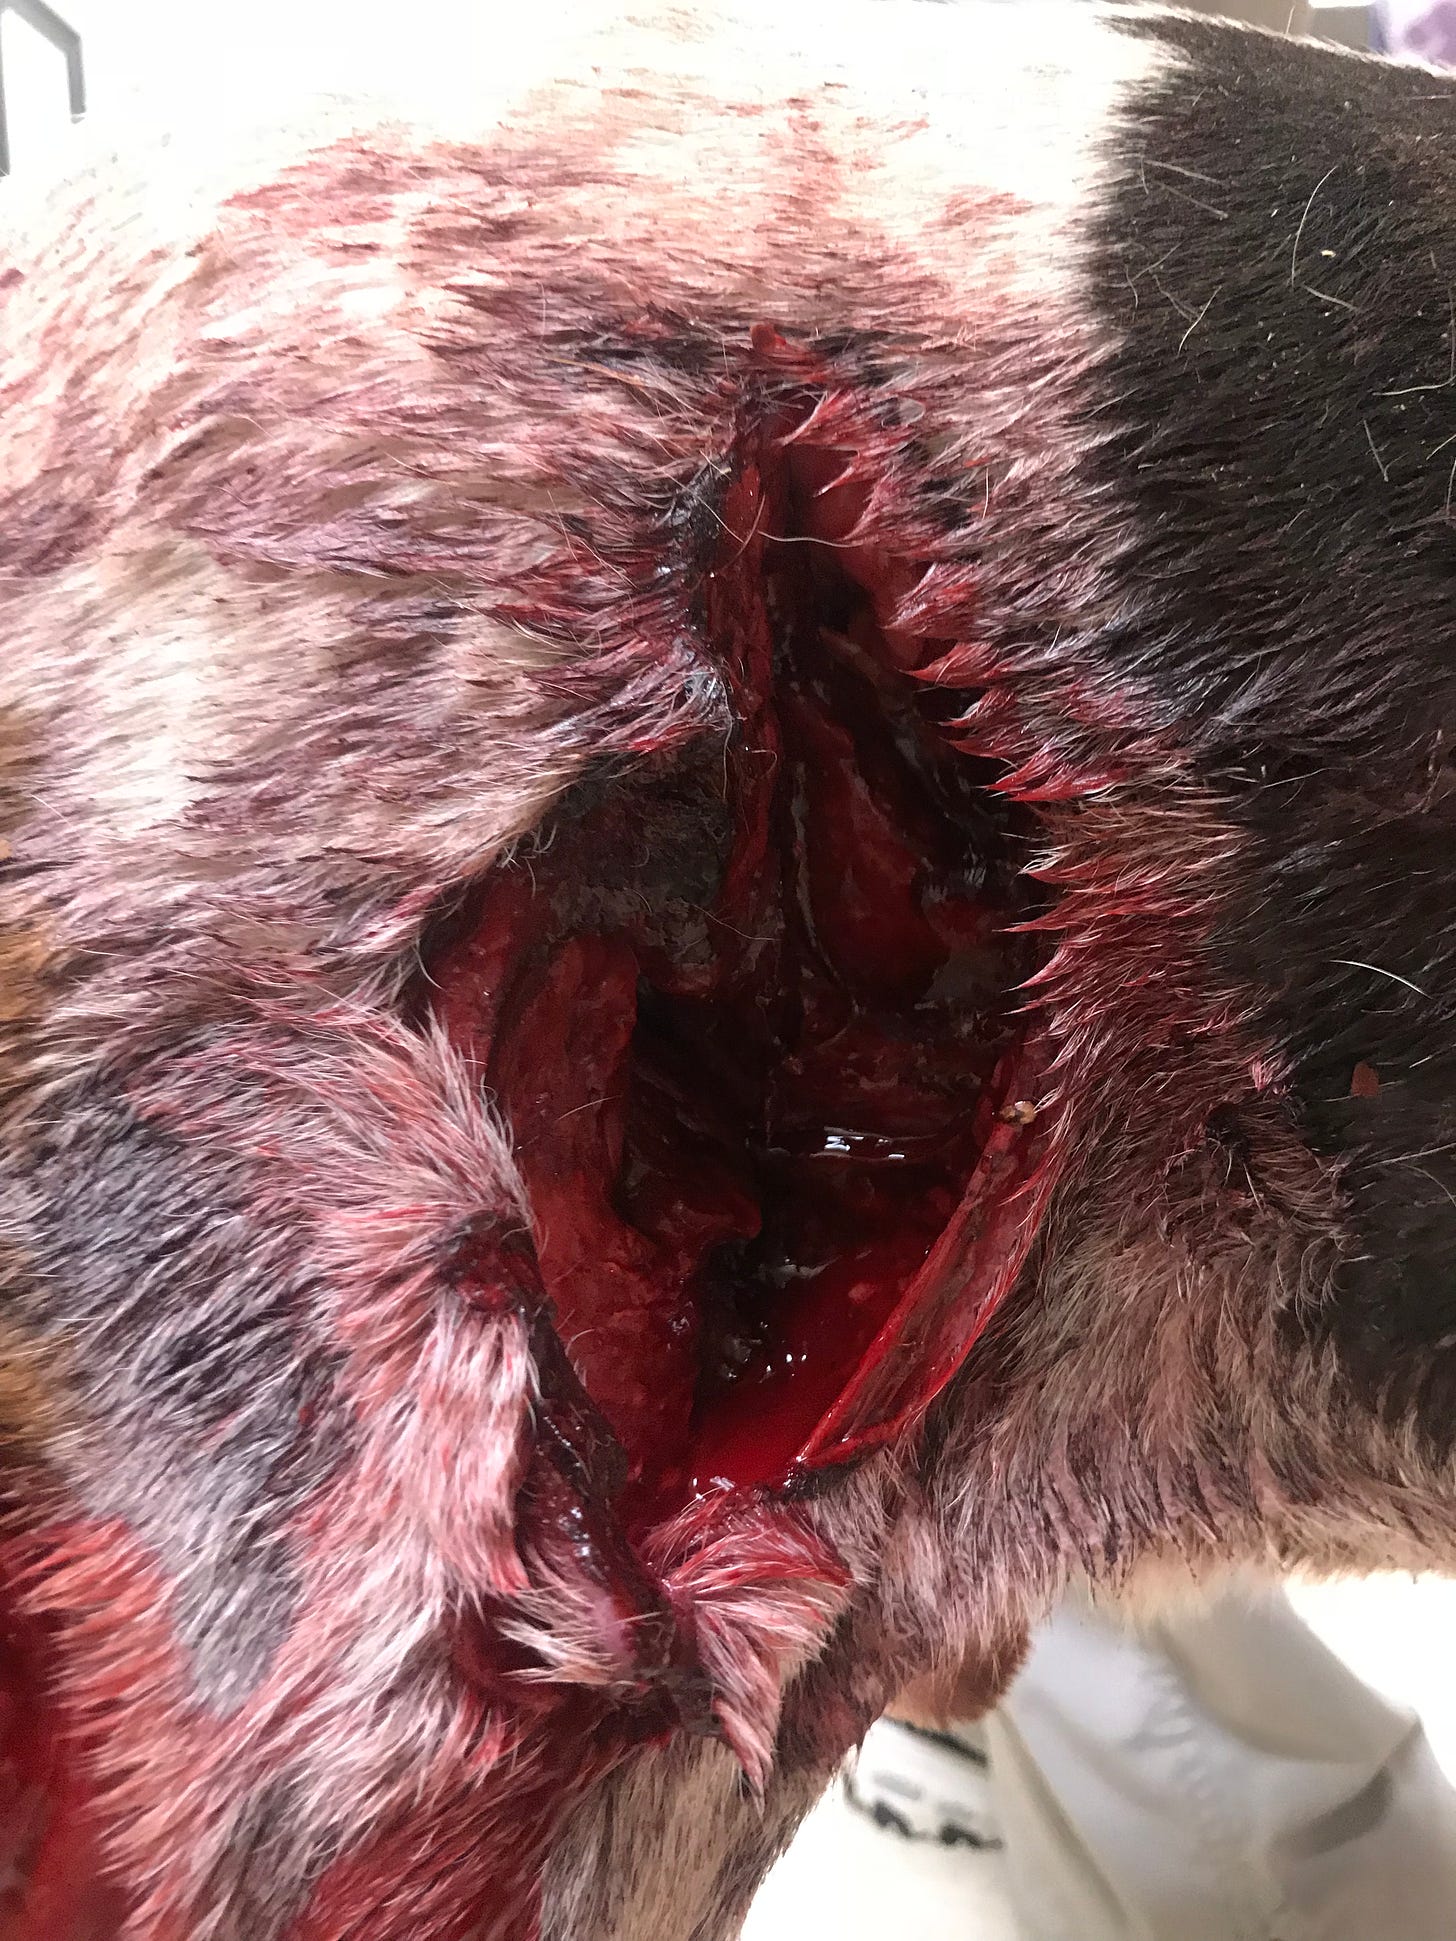 hound attacked by wild boar